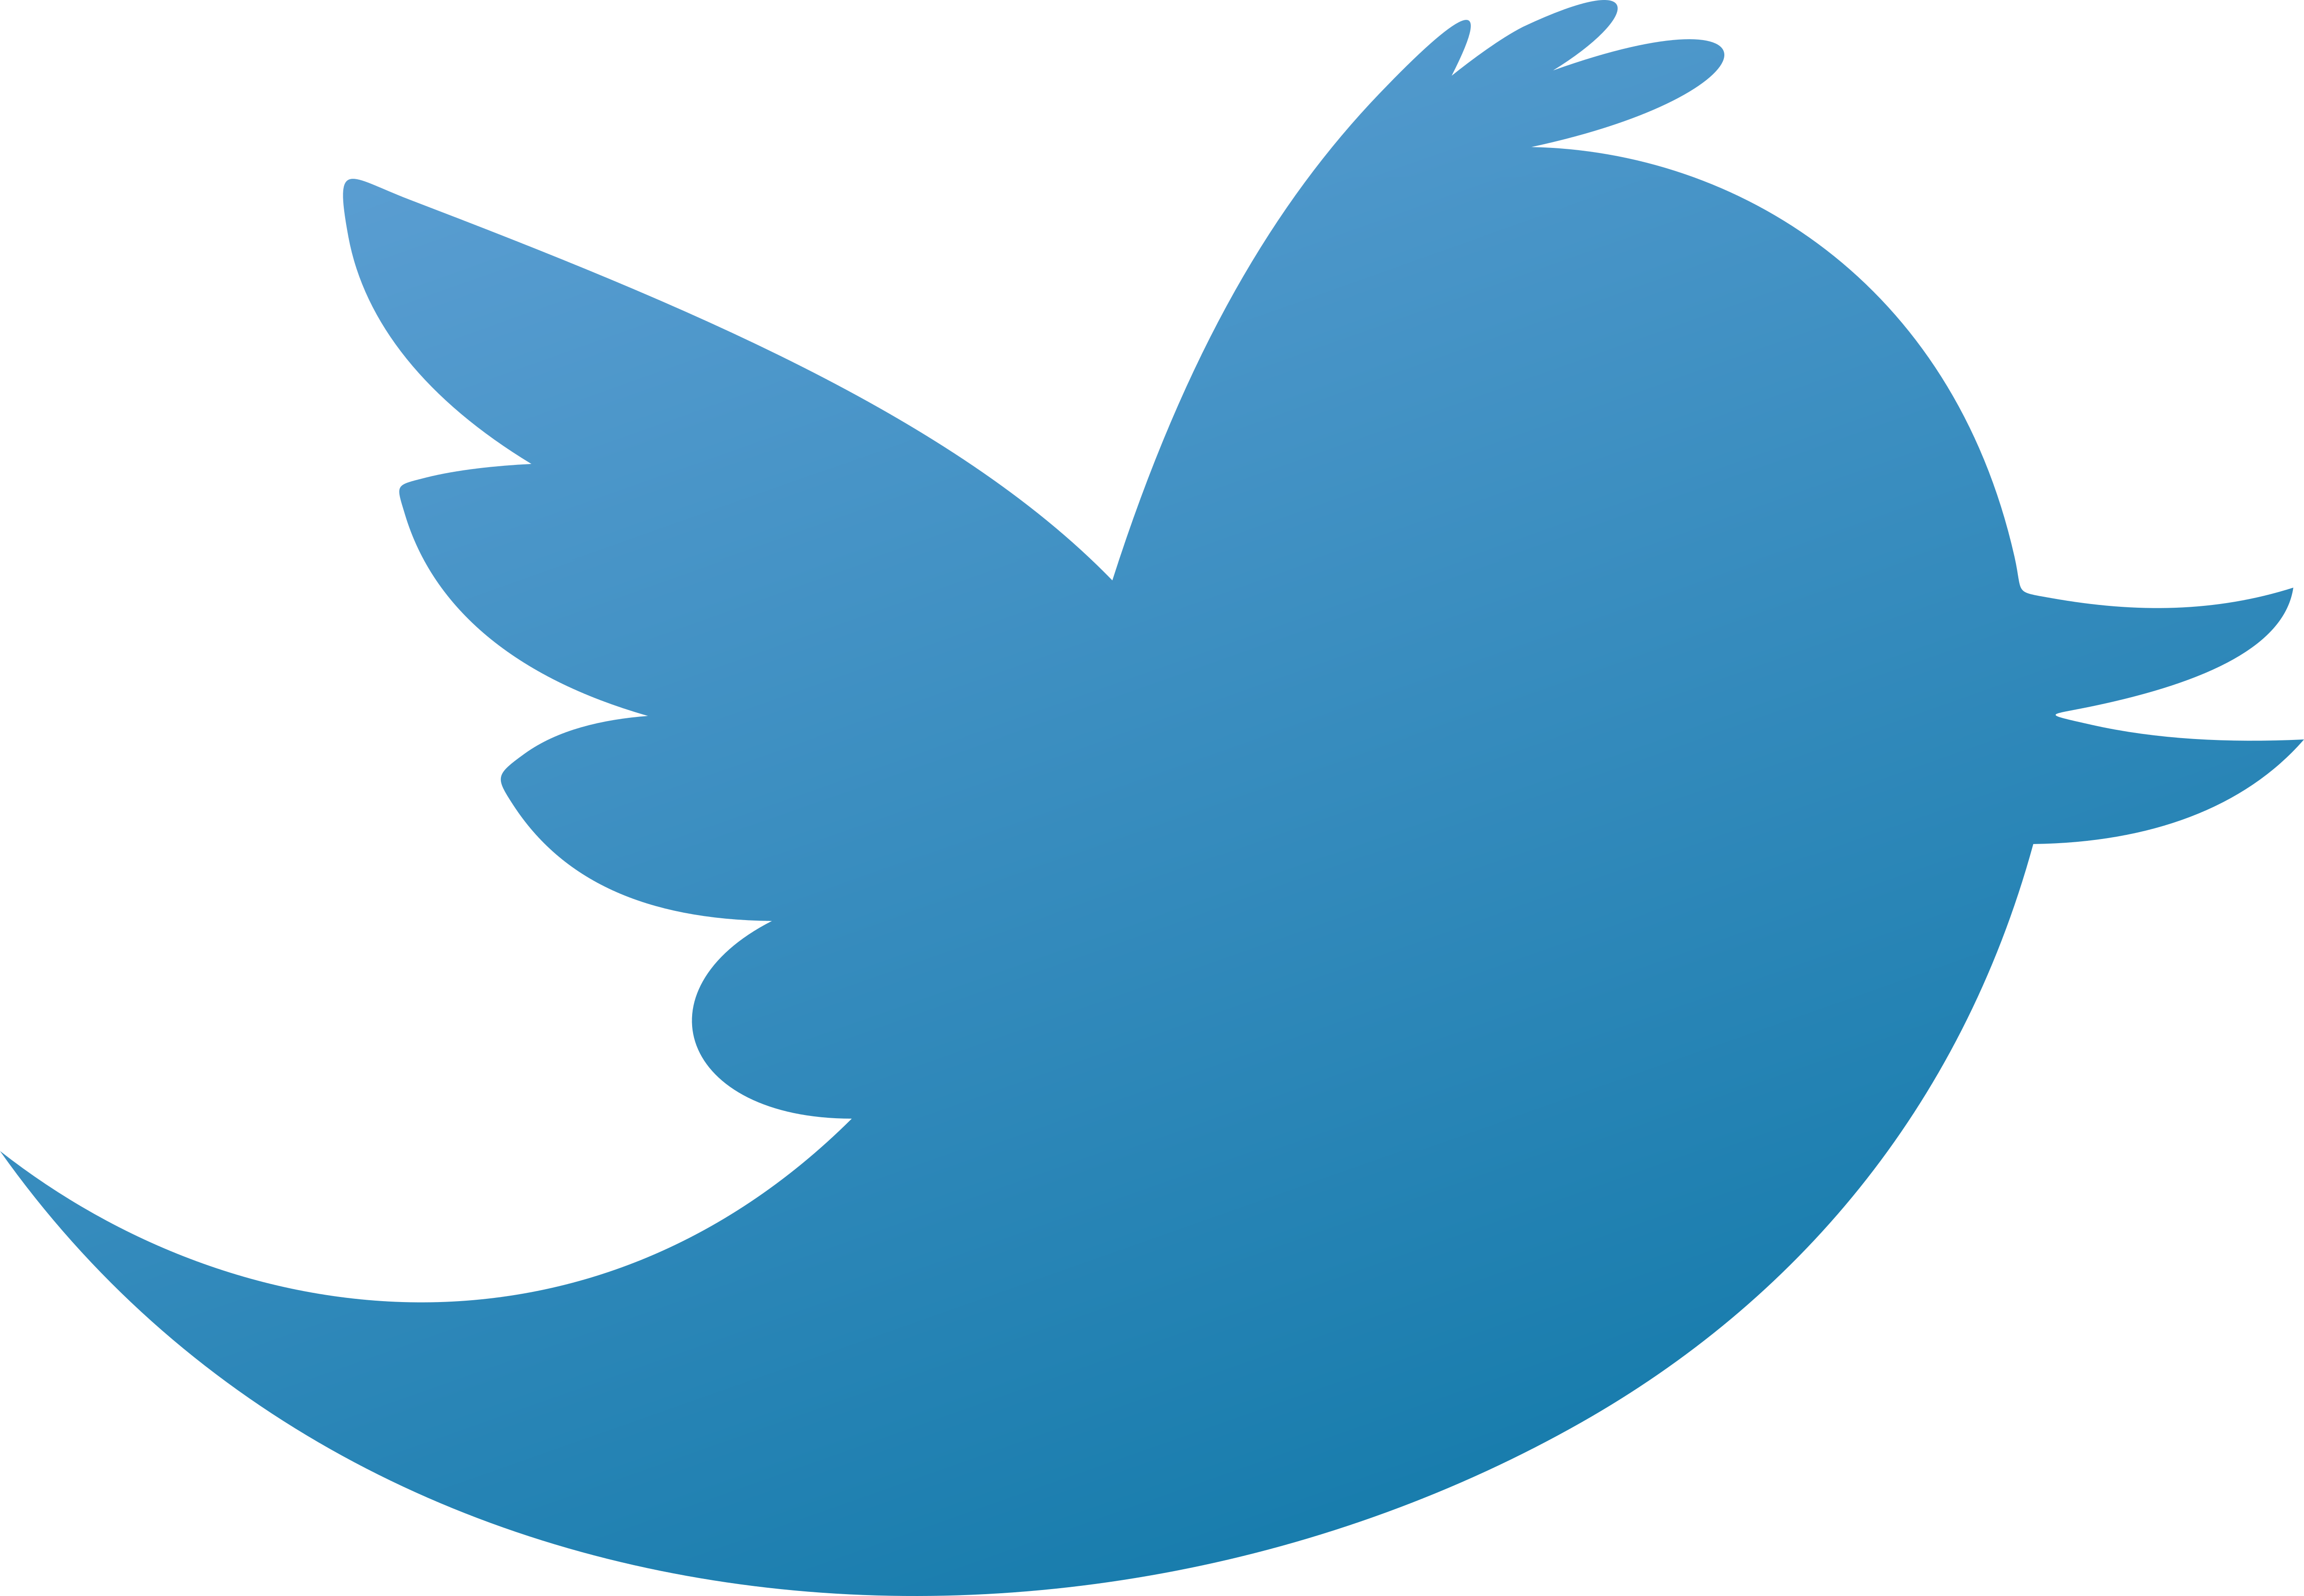 Twityter Logo - Twitter – Logos Download